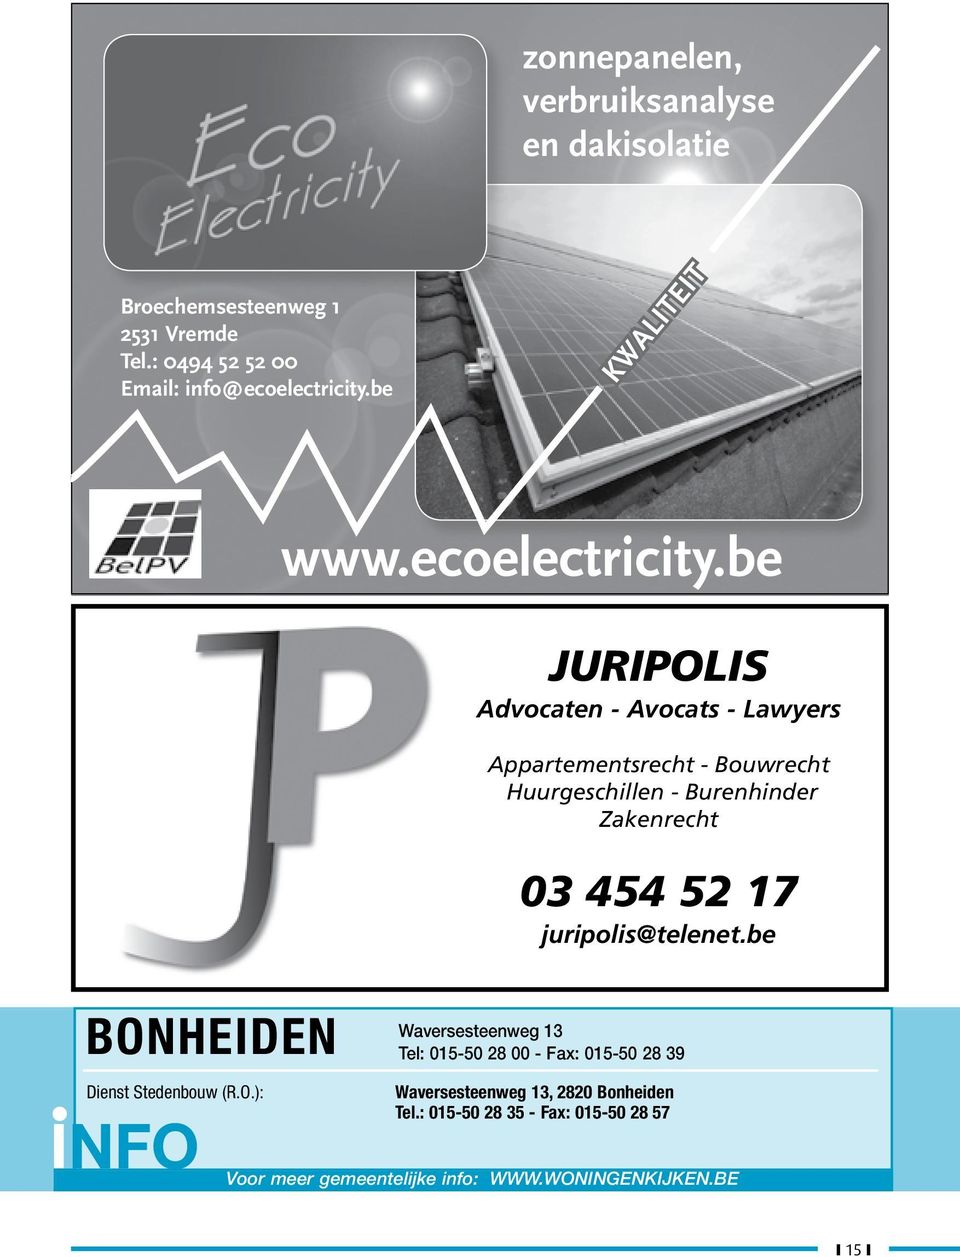 be ANTWERPEN KWALITEIT Grote Markt 1 Tel: 03-221 13 33 - Fax: 03-220 81 91 Jan Van Rijswijcklaan 162, 2000 Antwerpen Tel.: 03-202 66 66 - Fax: 03-202 66 98 www.ecoelectricity.